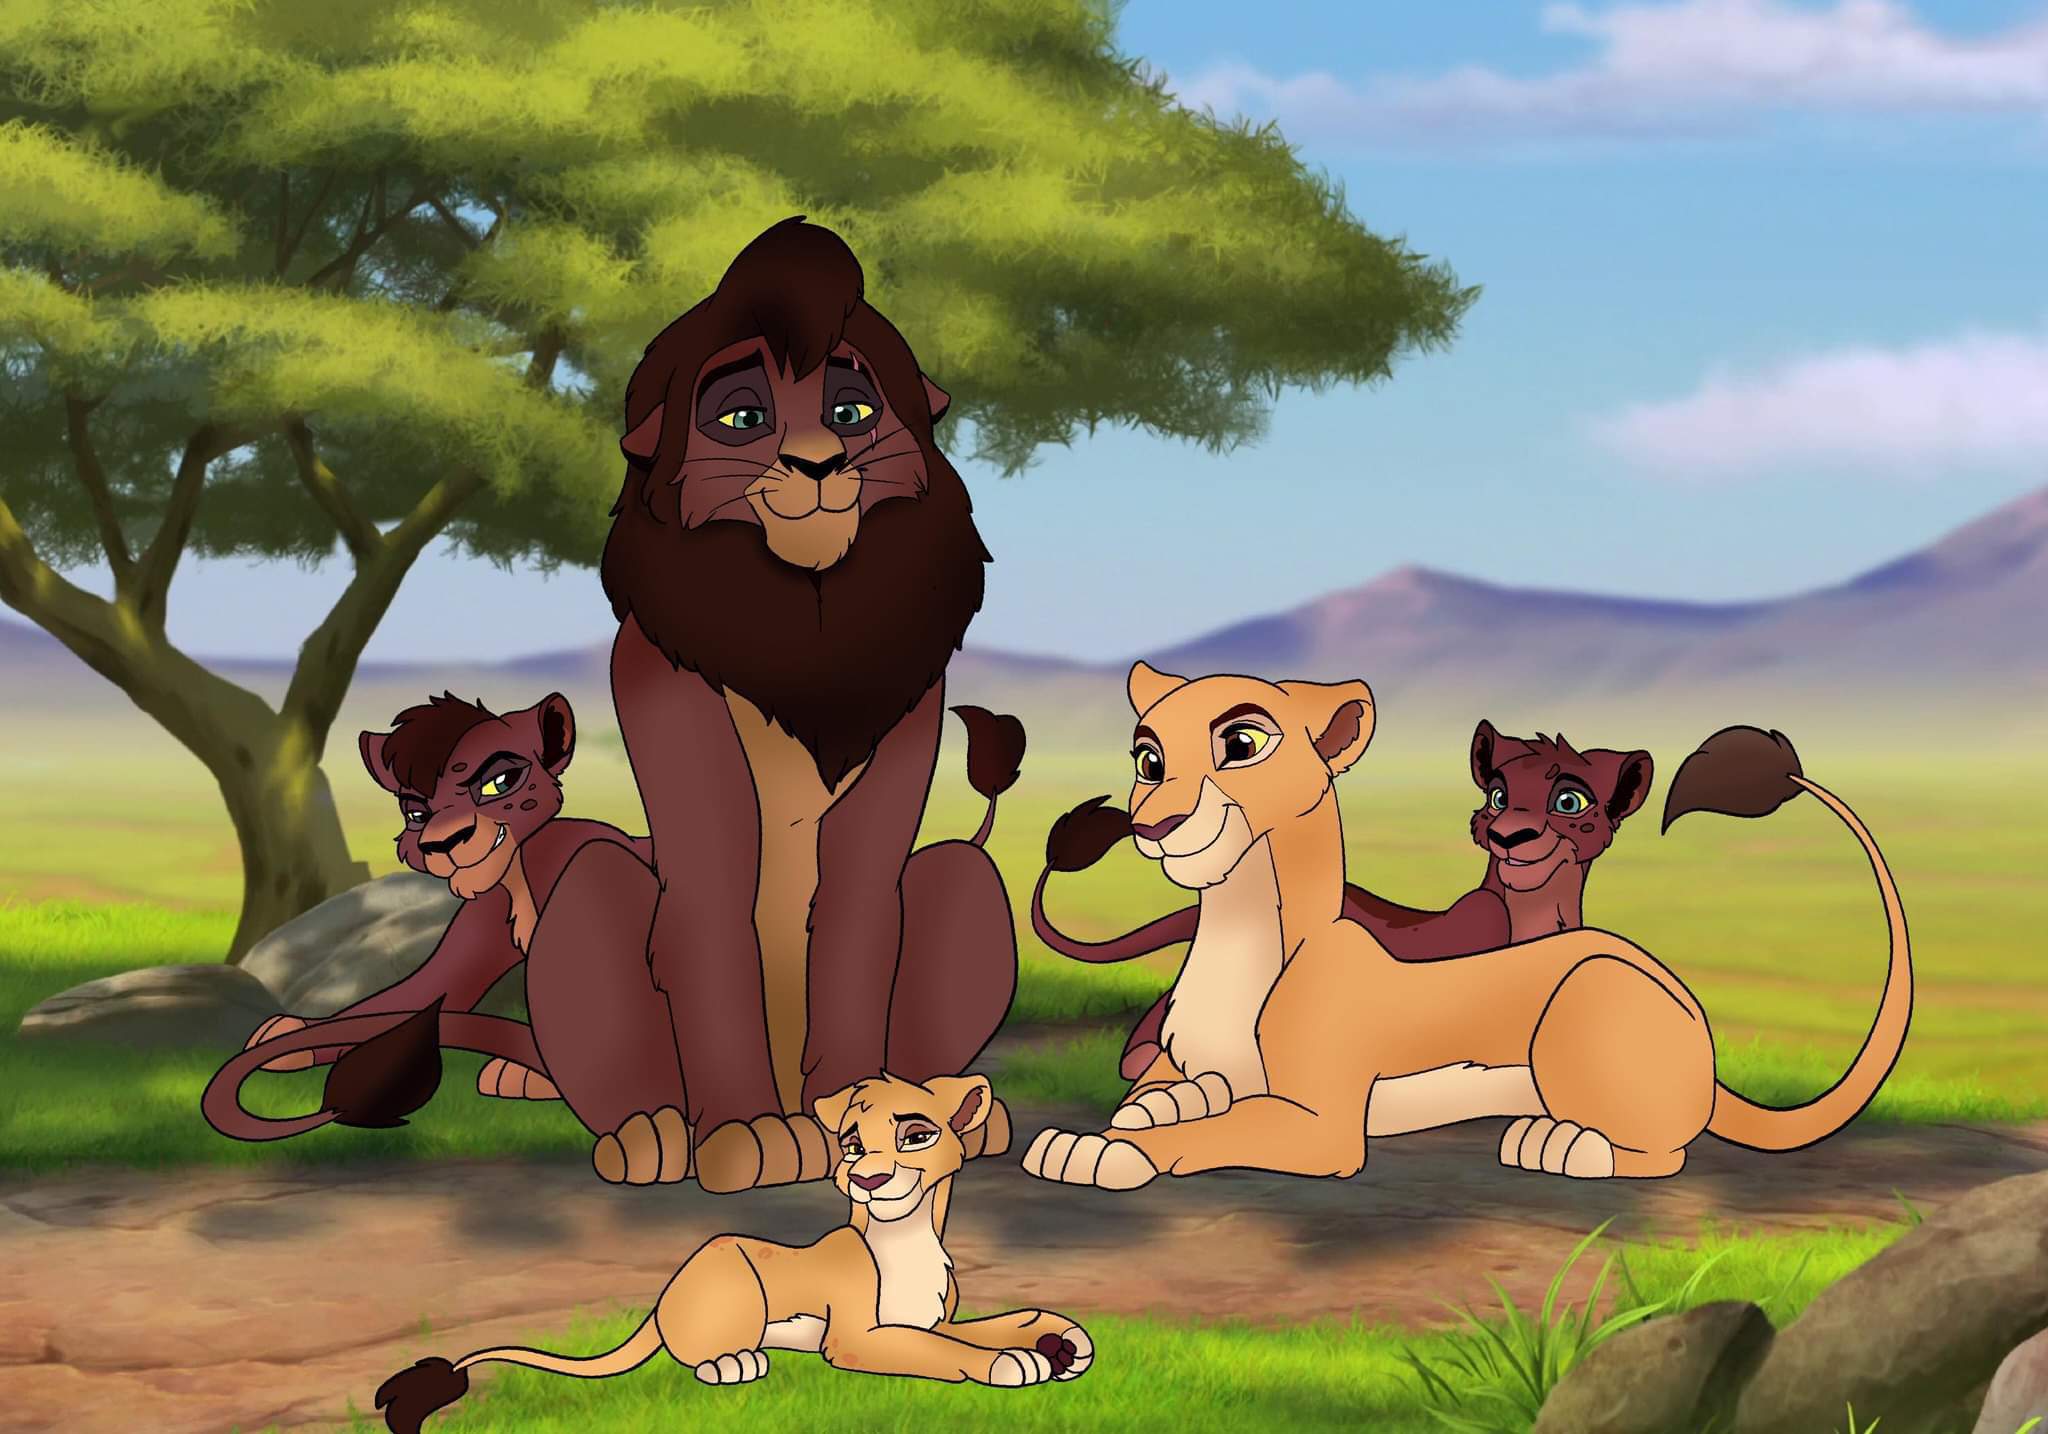 Kovu and Kiara nextgen fanart 🦁 The Lion King Amino 🦁 Amino.